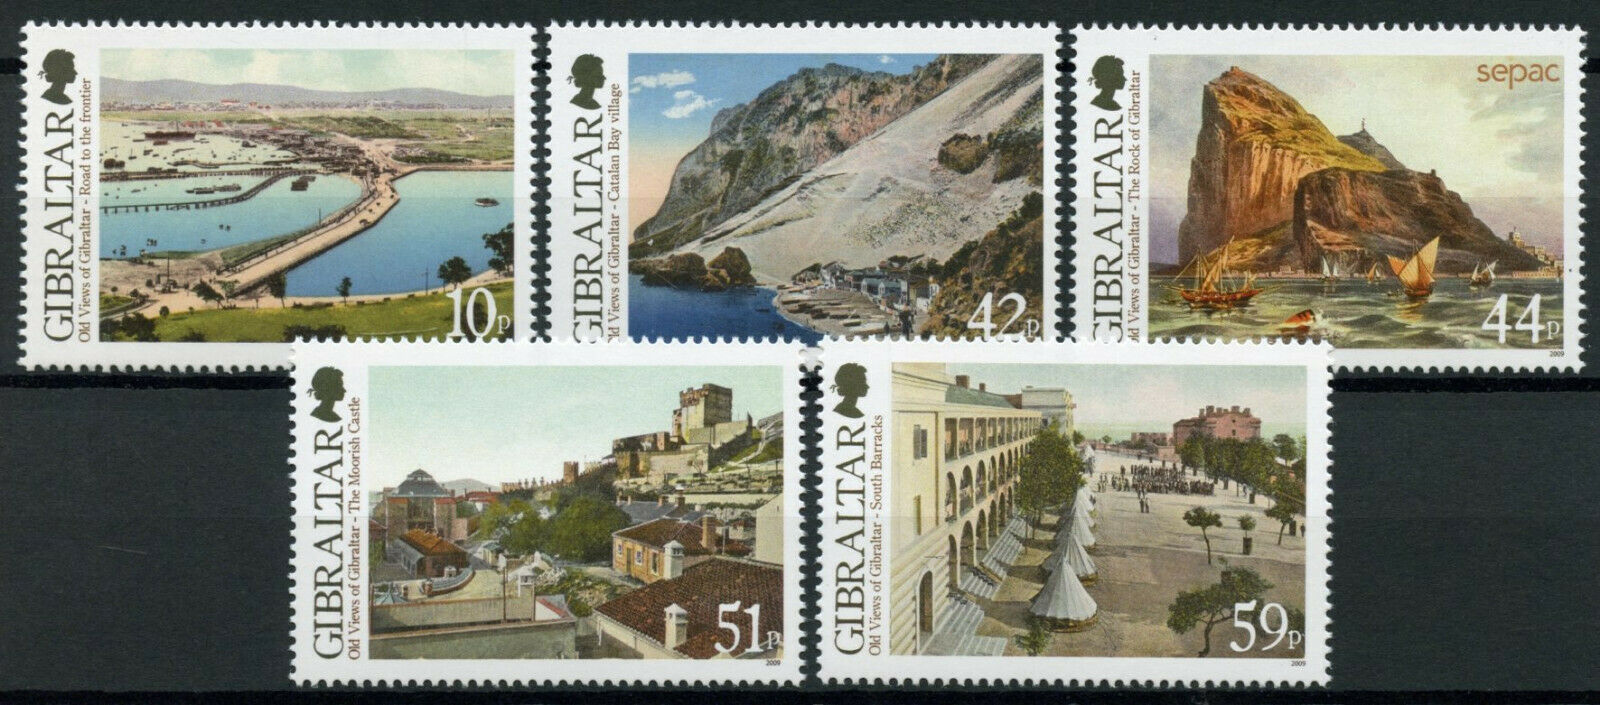 Gibraltar 2009 MNH Landscapes Stamps Old Views Part I SEPAC Architecture 5v Set